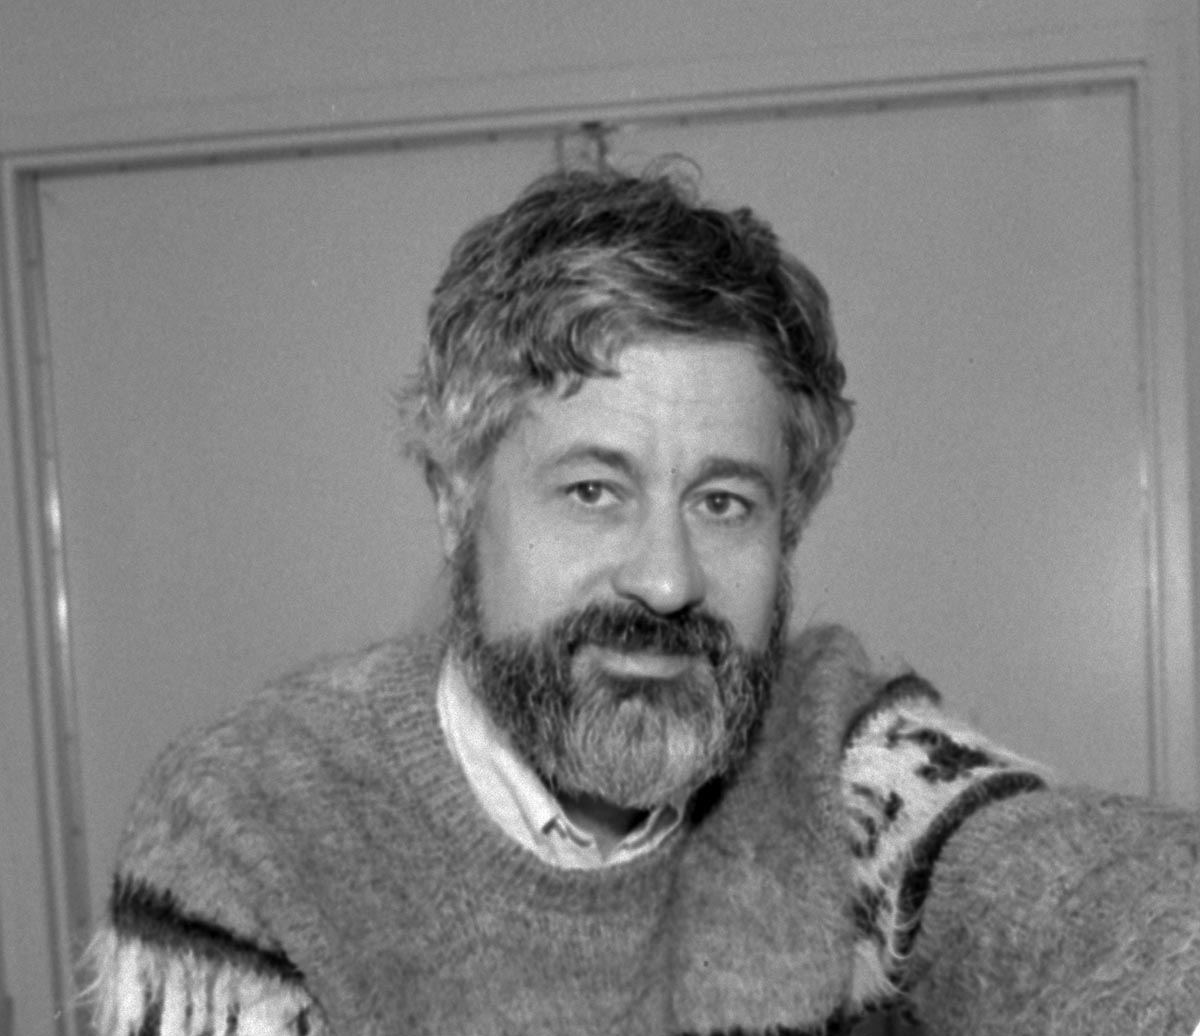 Bernard Sadoulet